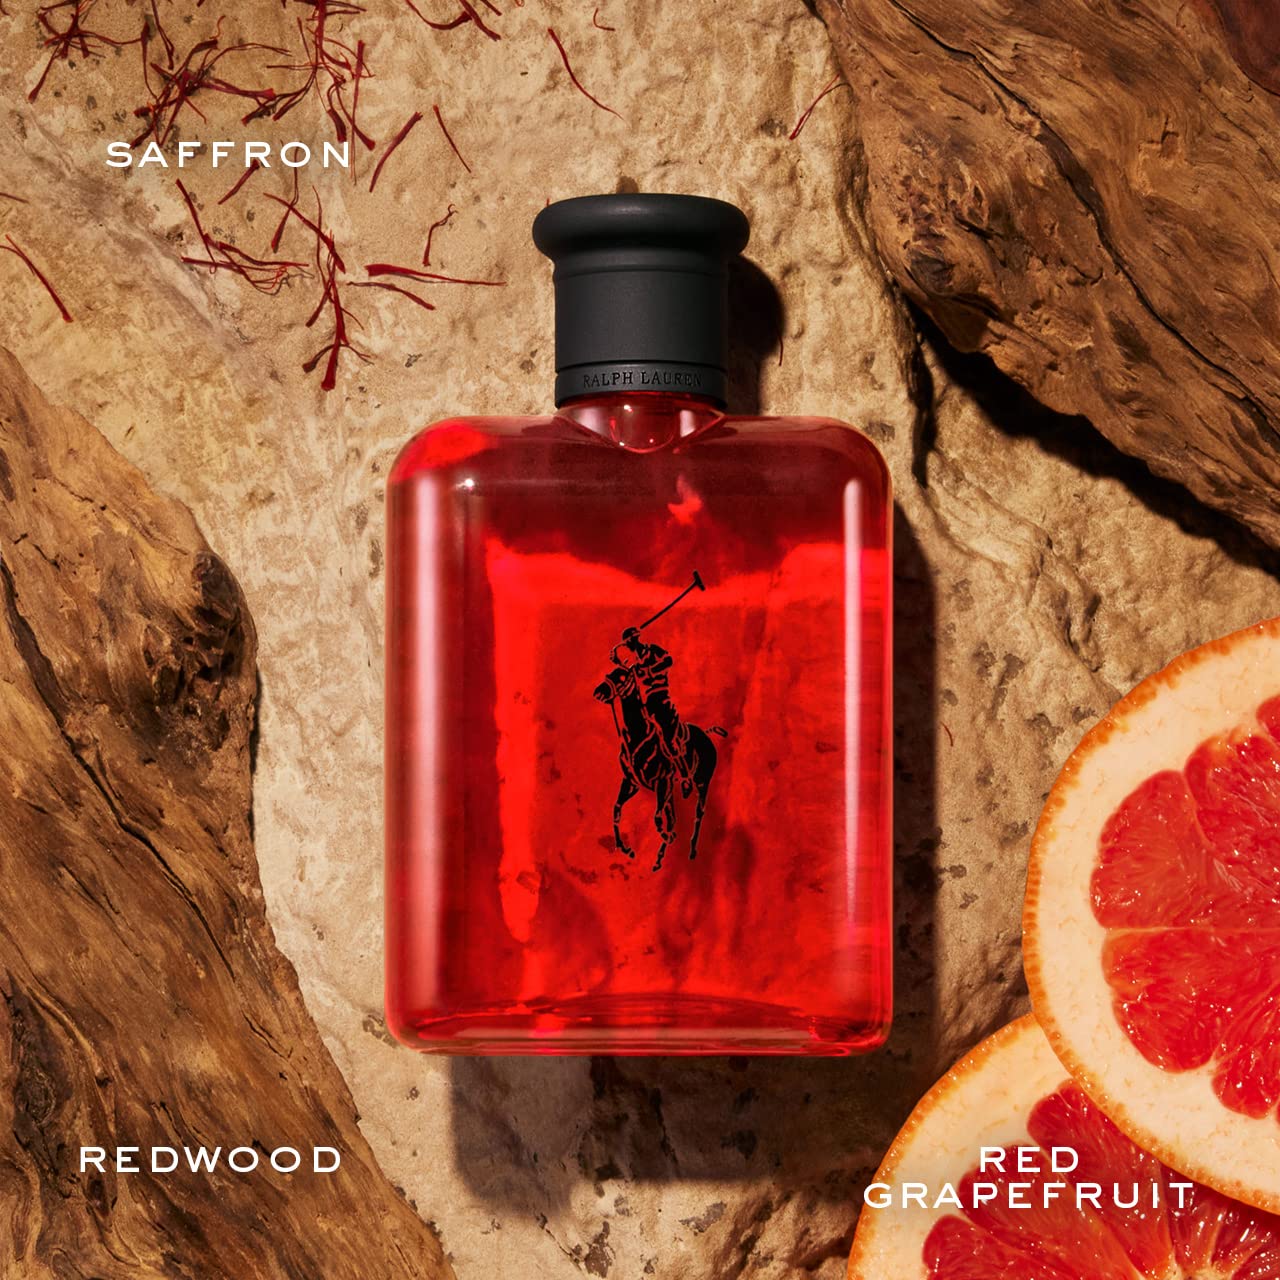 Ralph Lauren - Polo Red - Eau de Toilette - Men's Cologne - Woody & Spicy - With Grapefruit, Saffron, and Redwood - Medium Intensity